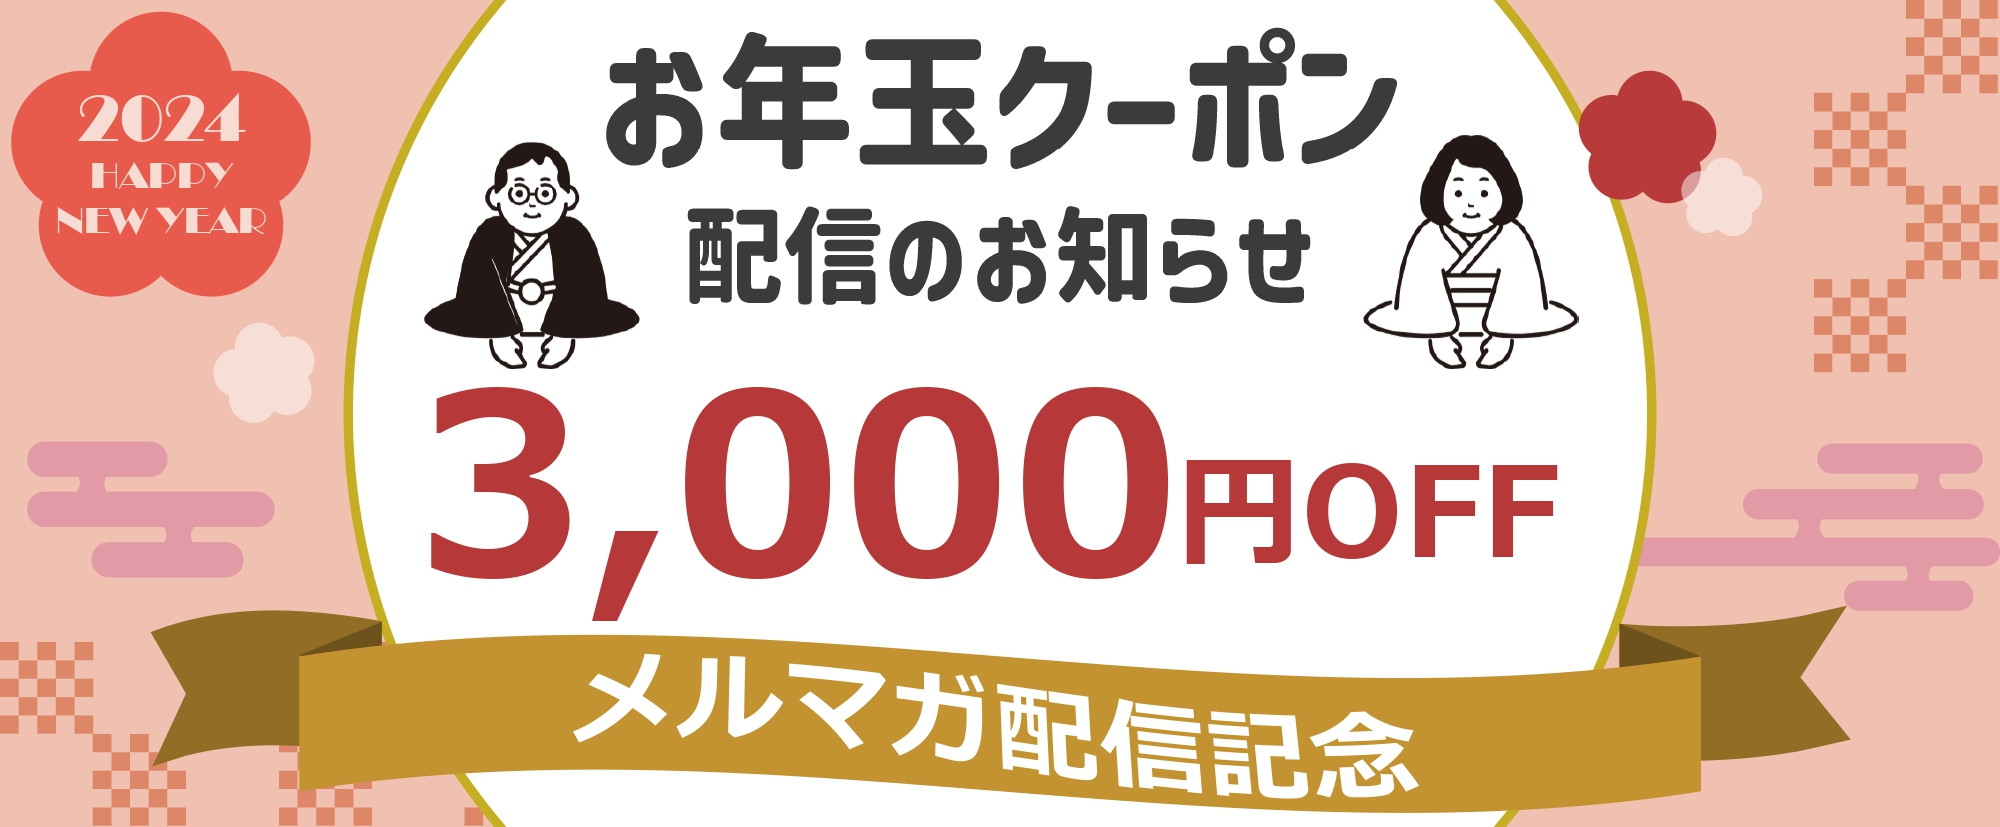 【3000円OFF】お年玉クーポン配信のお知らせ